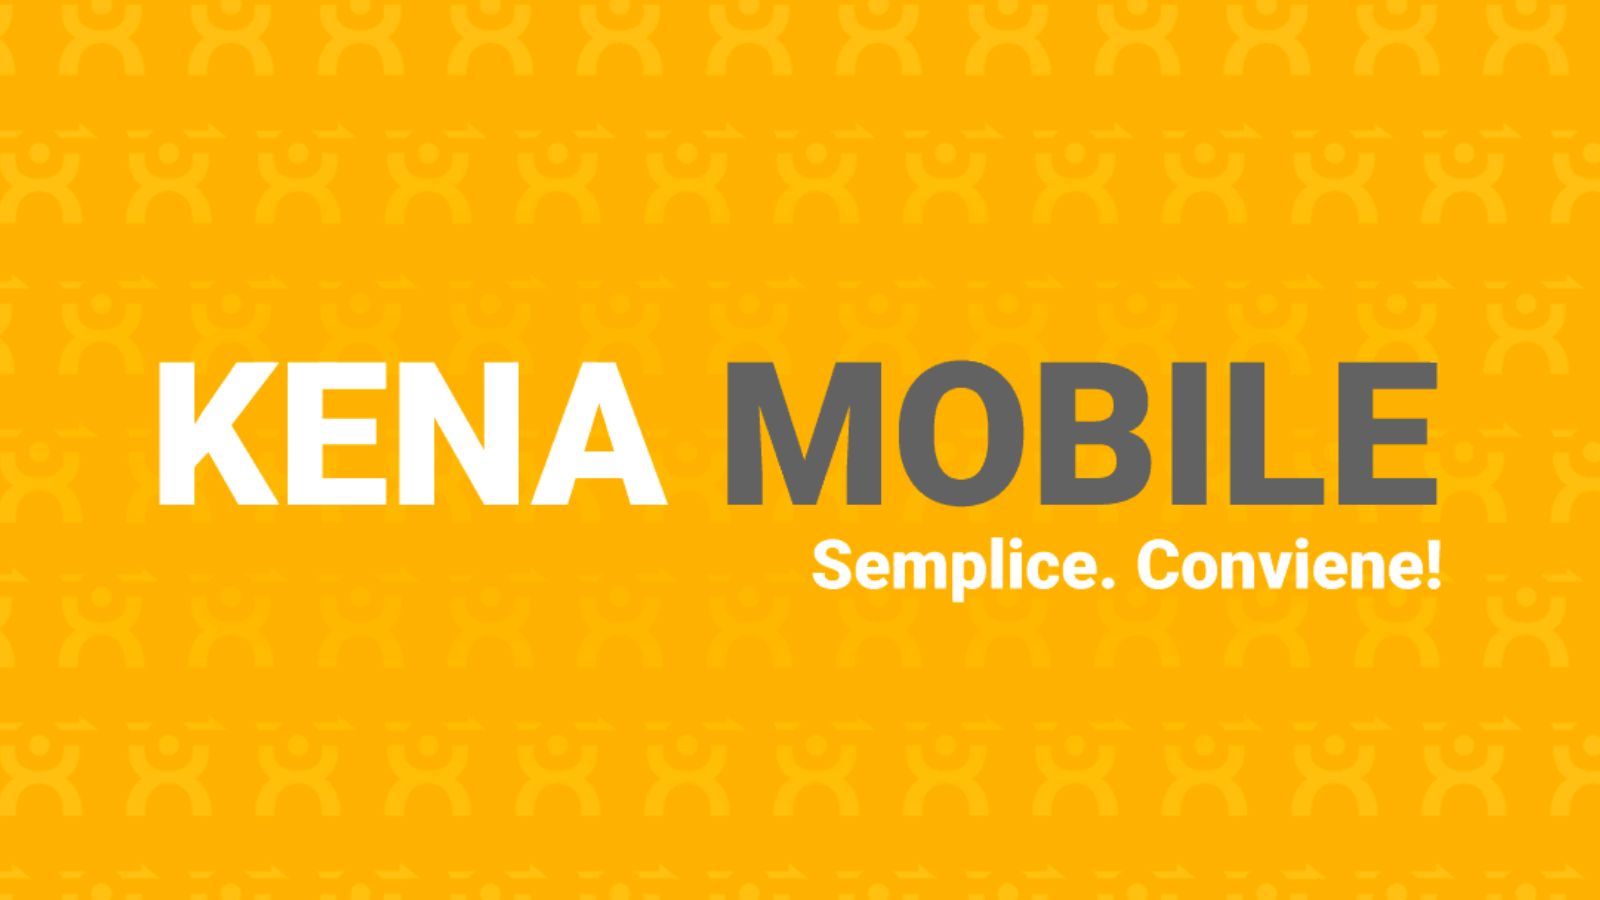 Kena Mobile, le offerte concorrenti perdono contro questa da 100 GIGA